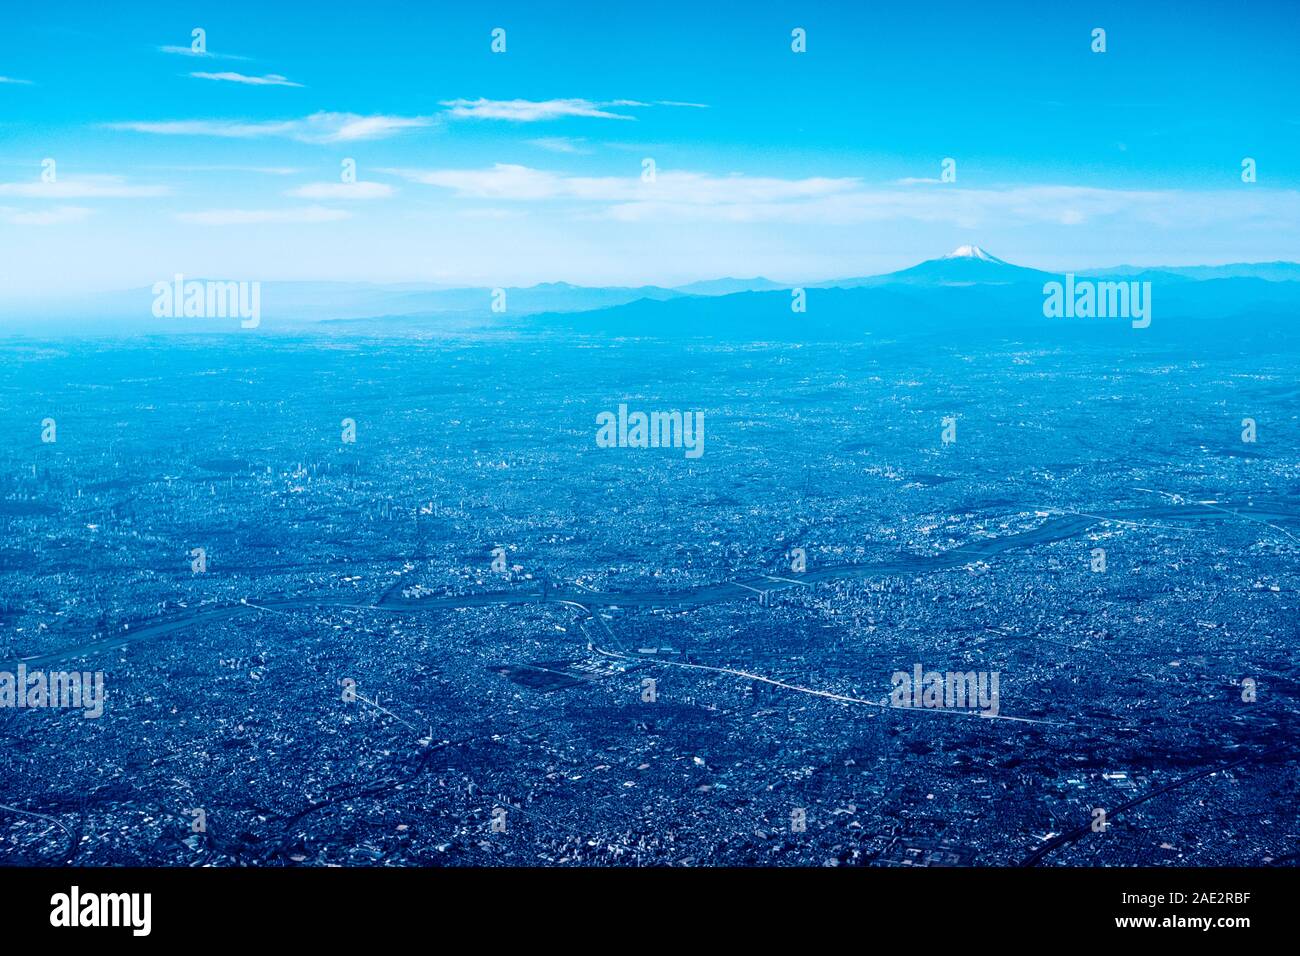 Aerial view of the Kanto plain with Mount Fuji,  Tokyo metropolitan area and Kawaguchi (Saitama Prefecture) on the far right Stock Photo